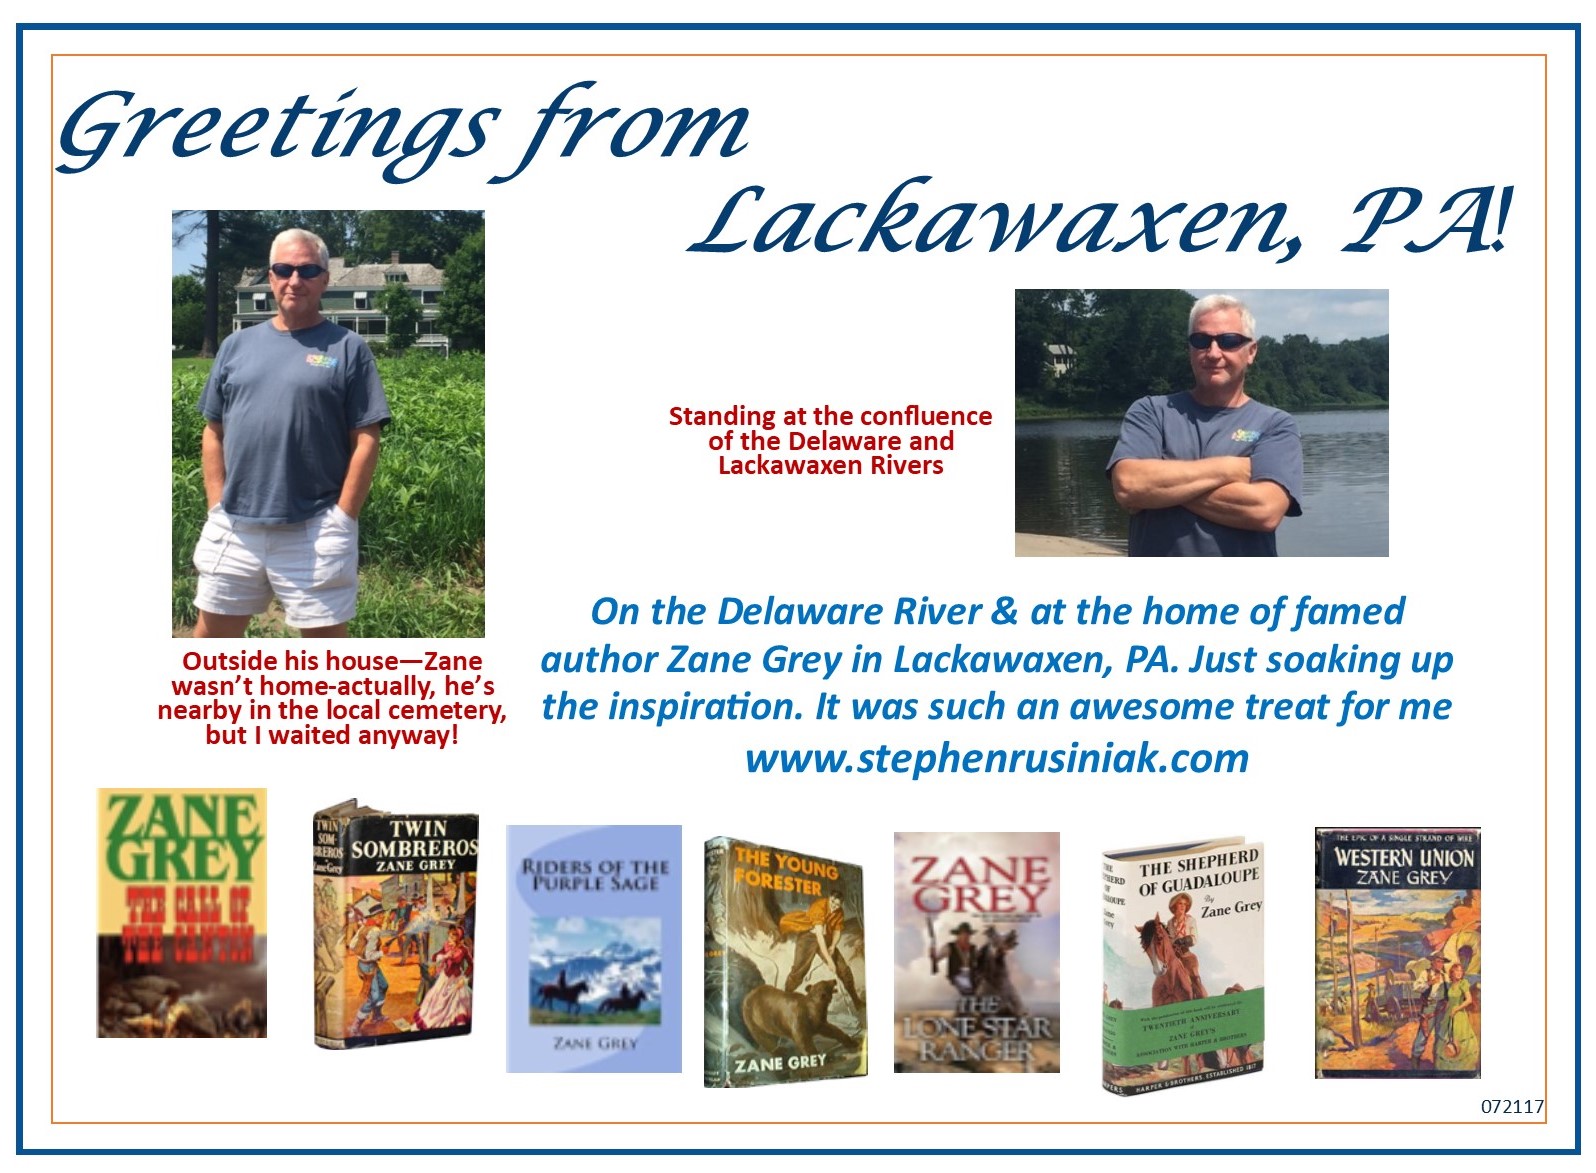 Greetings from Lackawaxen PA 072117.jpg